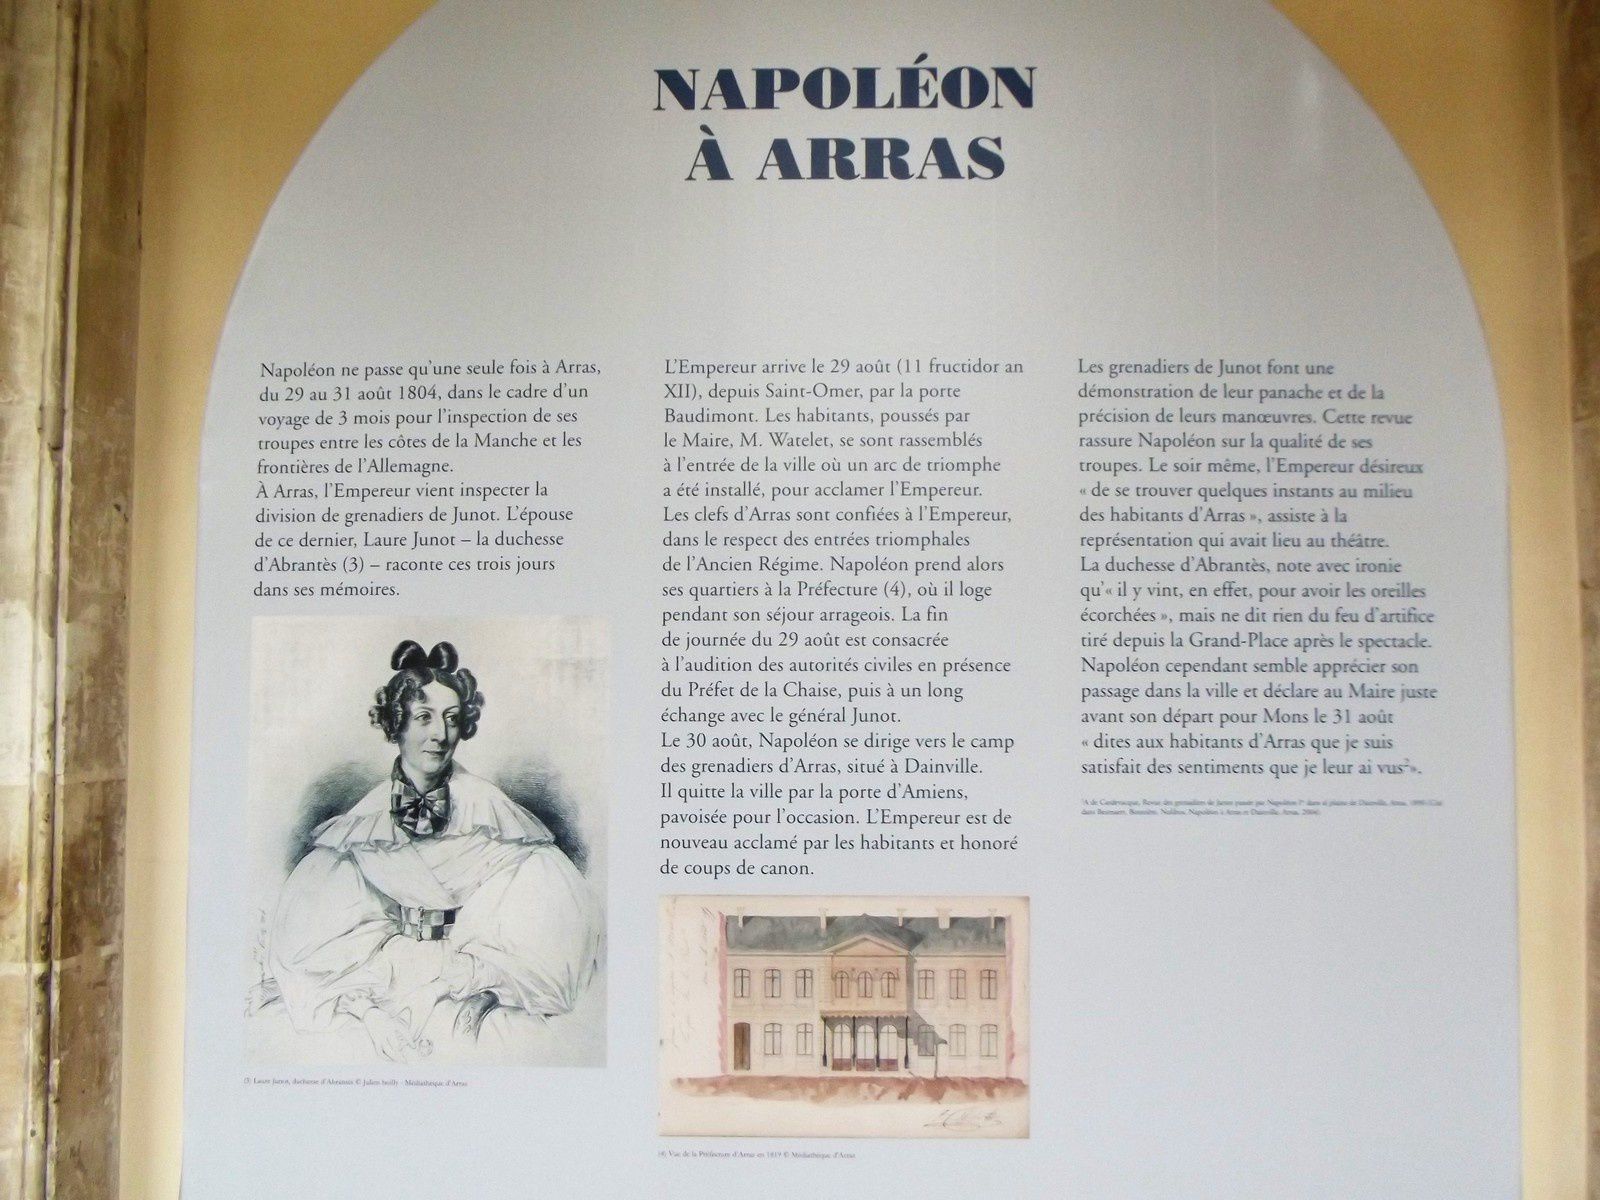 Photos 5 et 6 : Les parents de Napoléon Charles et Letizia Bonaparte